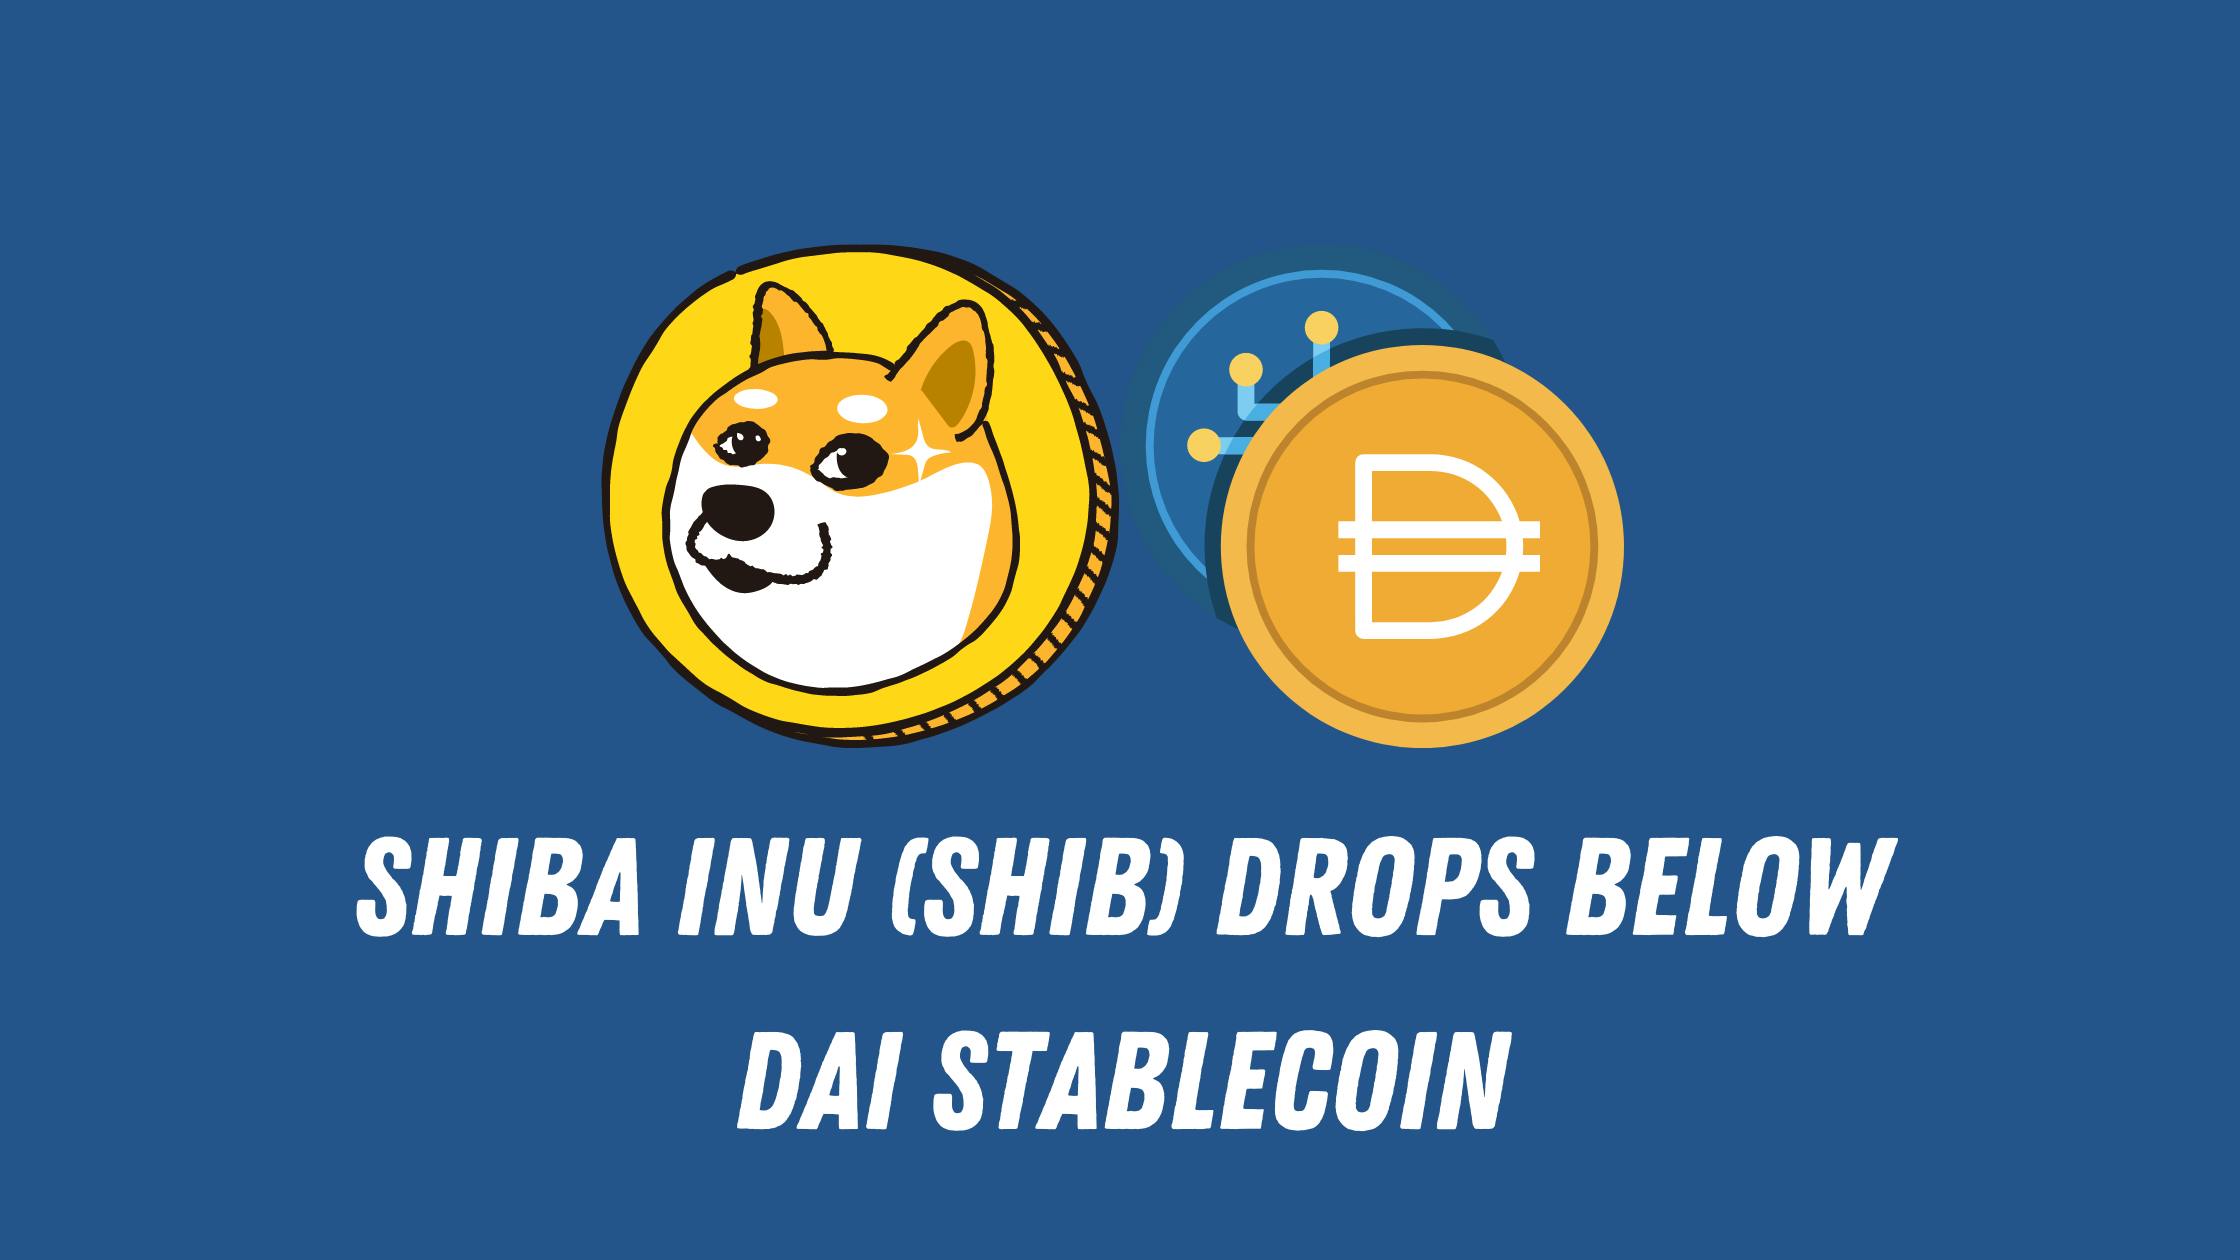 Shiba Inu (SHIB) Drops Below Dai Stablecoin